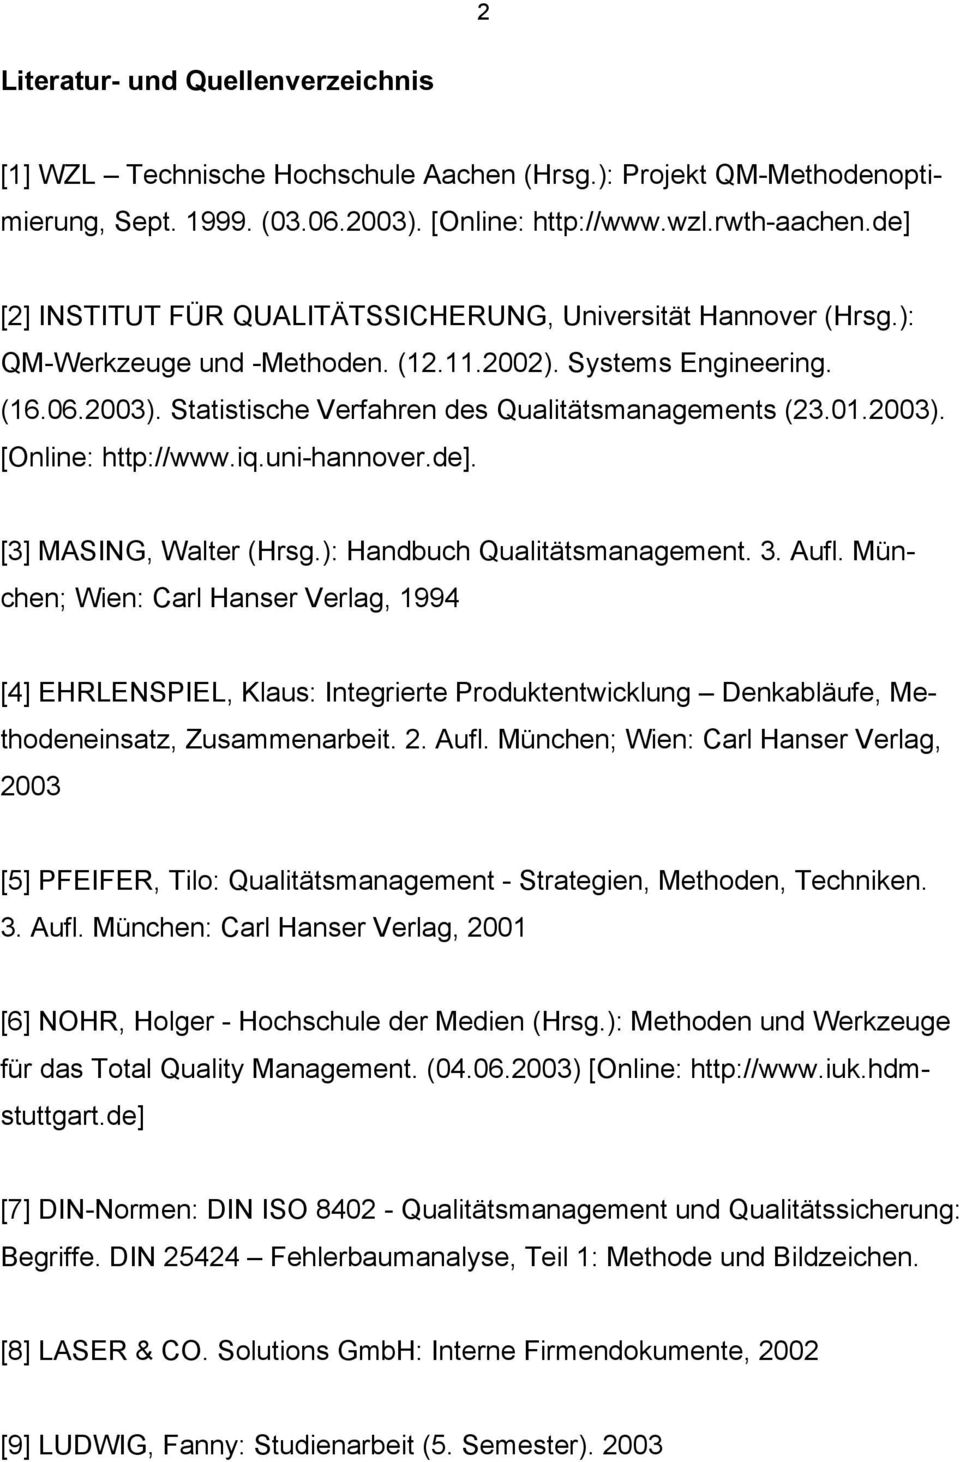 01.2003). [Online: http://www.iq.uni-hannover.de]. [3] MASING, Walter (Hrsg.): Handbuch Qualitätsmanagement. 3. Aufl.